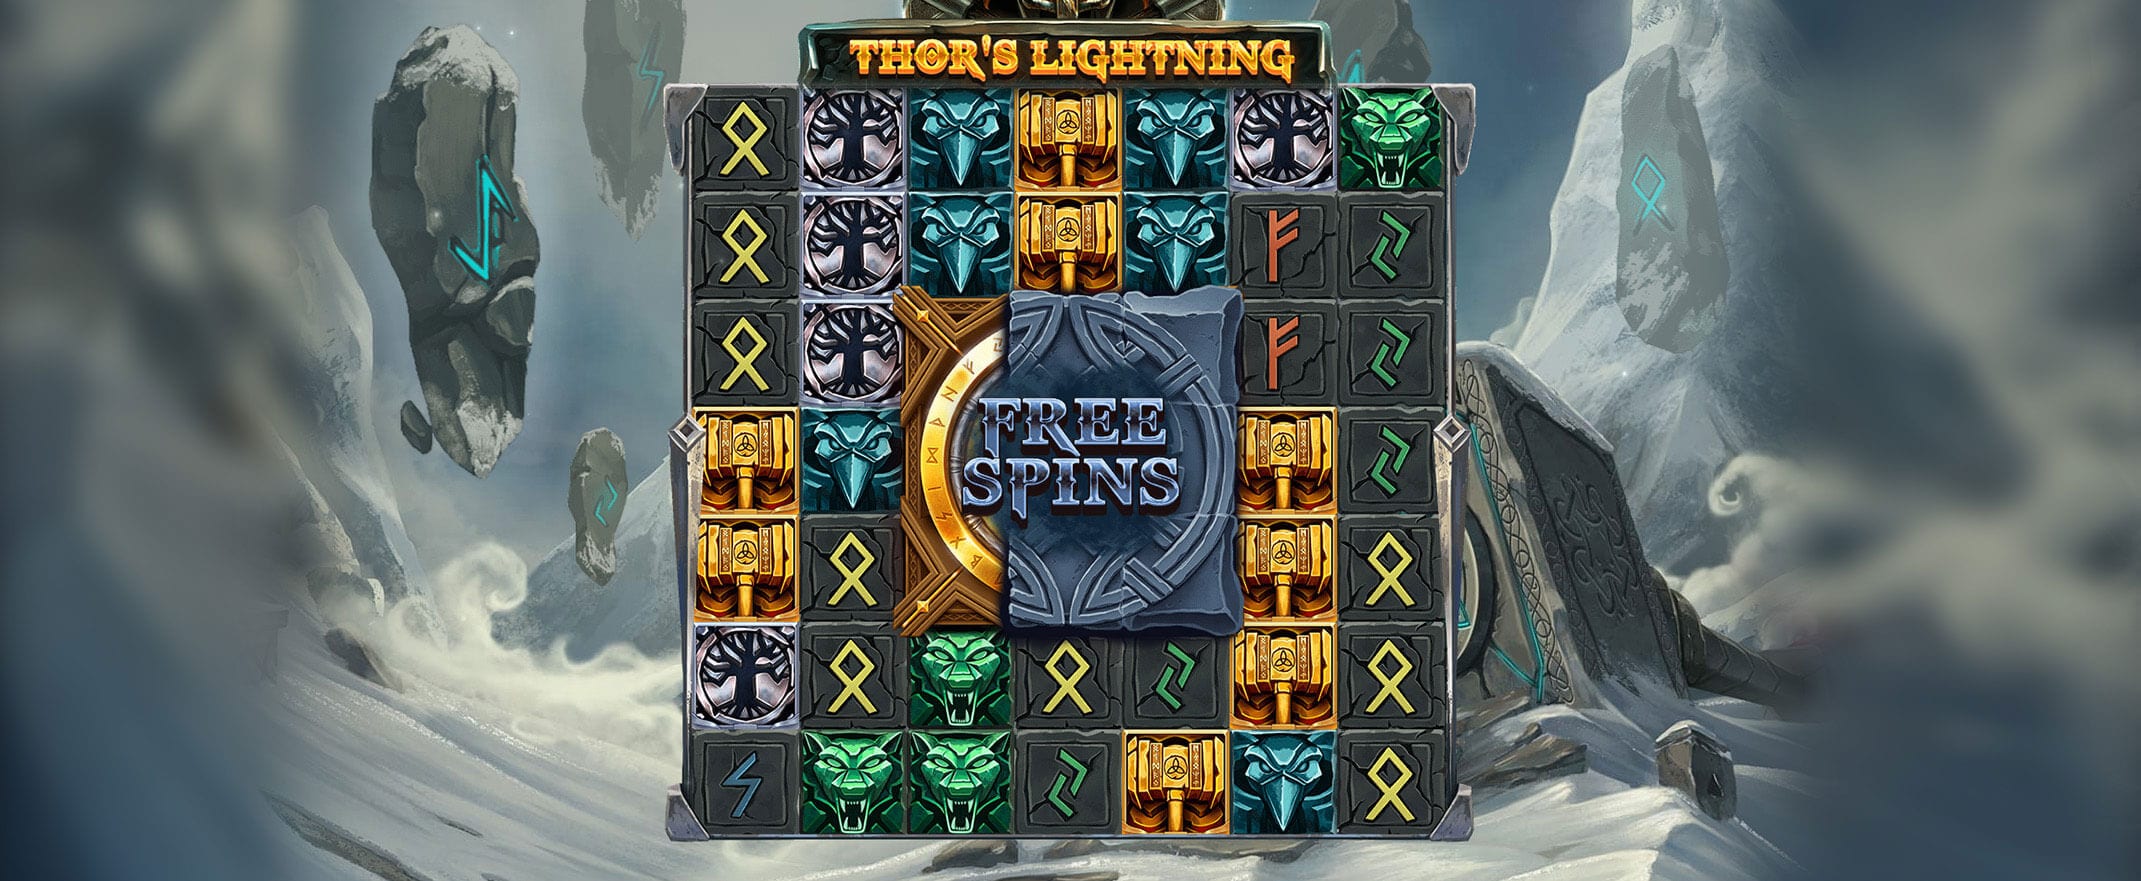 Thor's Lightning slot Game